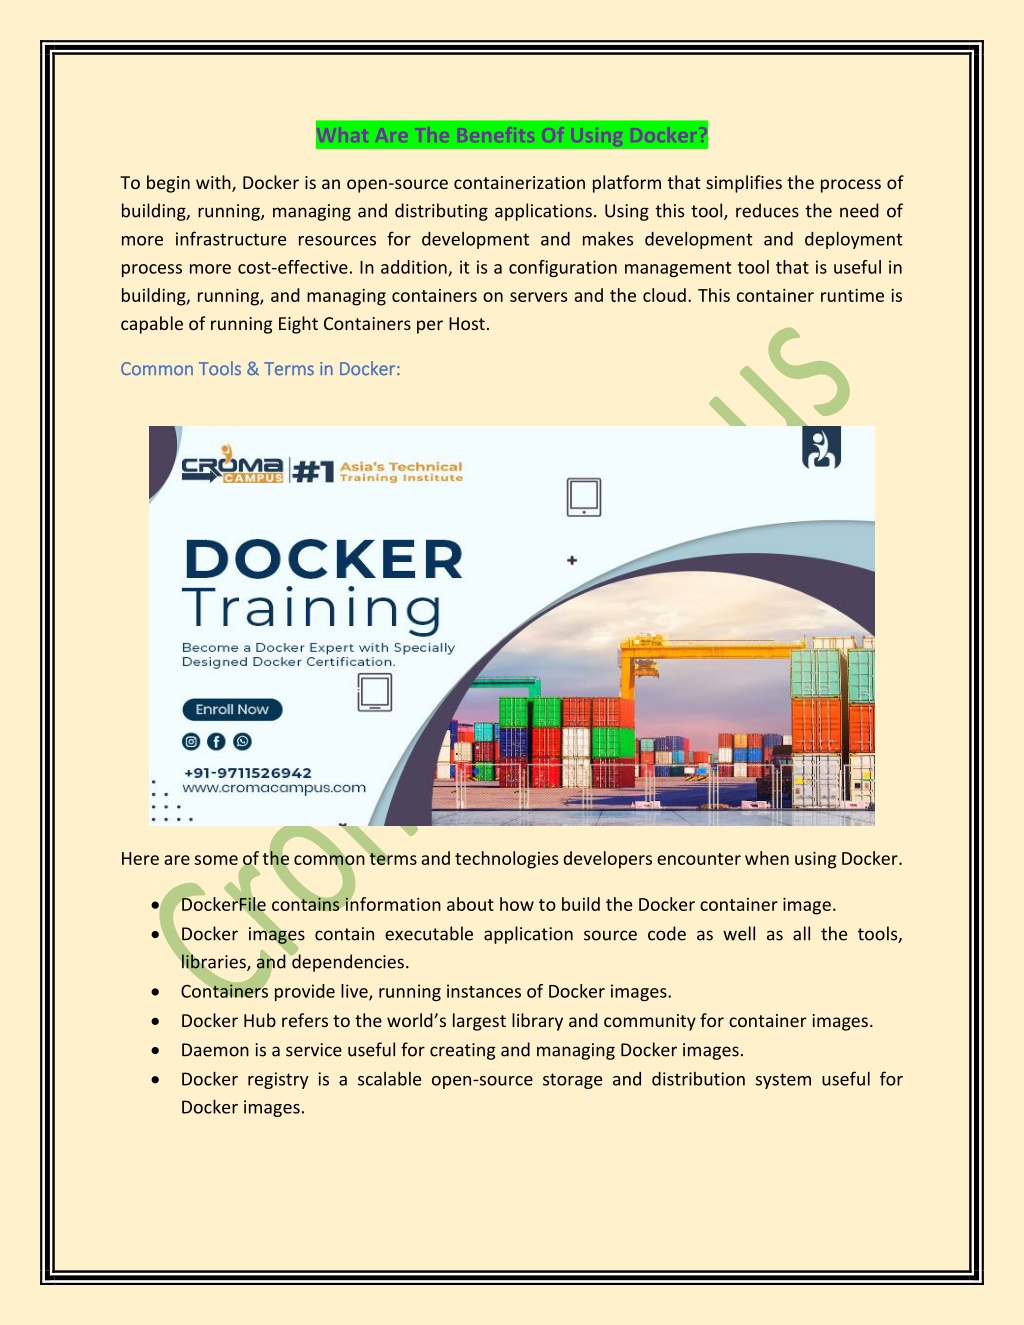 docker presentation ppt 2021 download